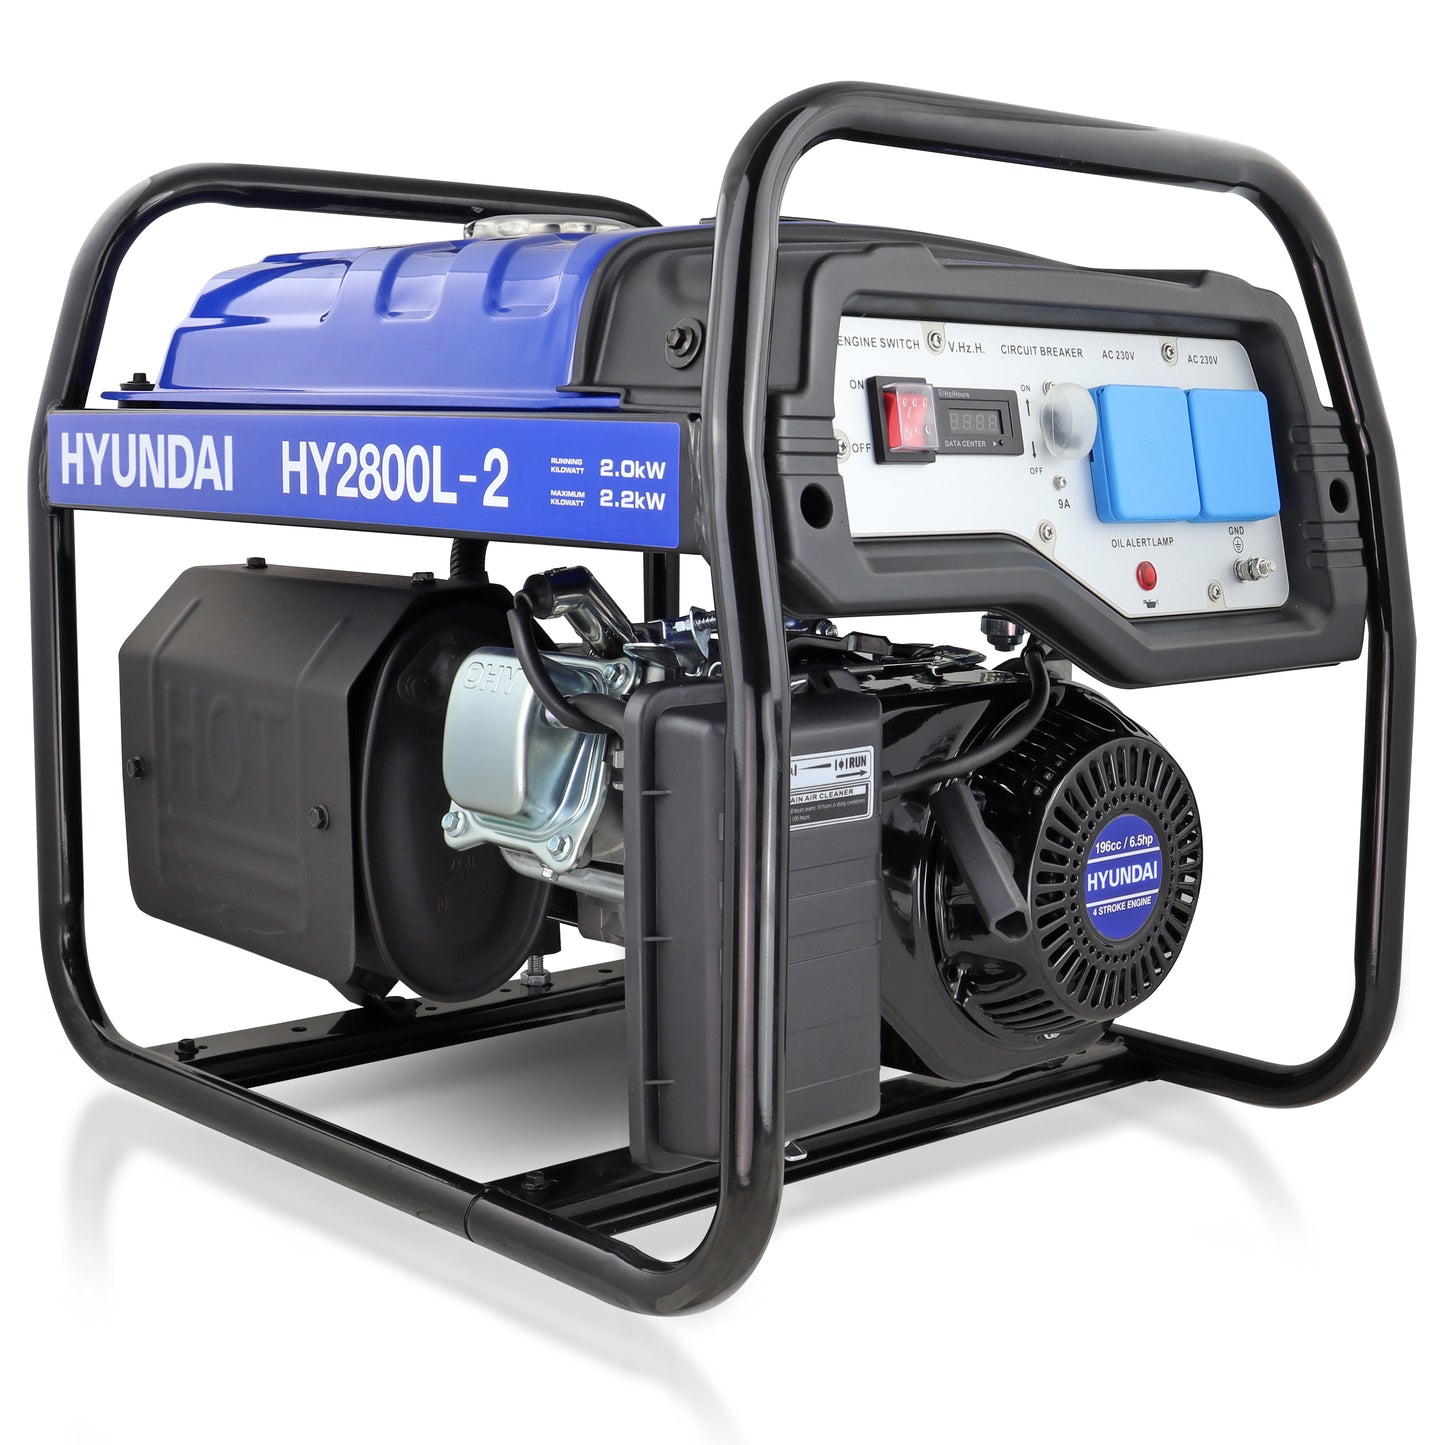 Hyundai HY2800L-2 2.2kW/2.75kVa Site Petrol Generator